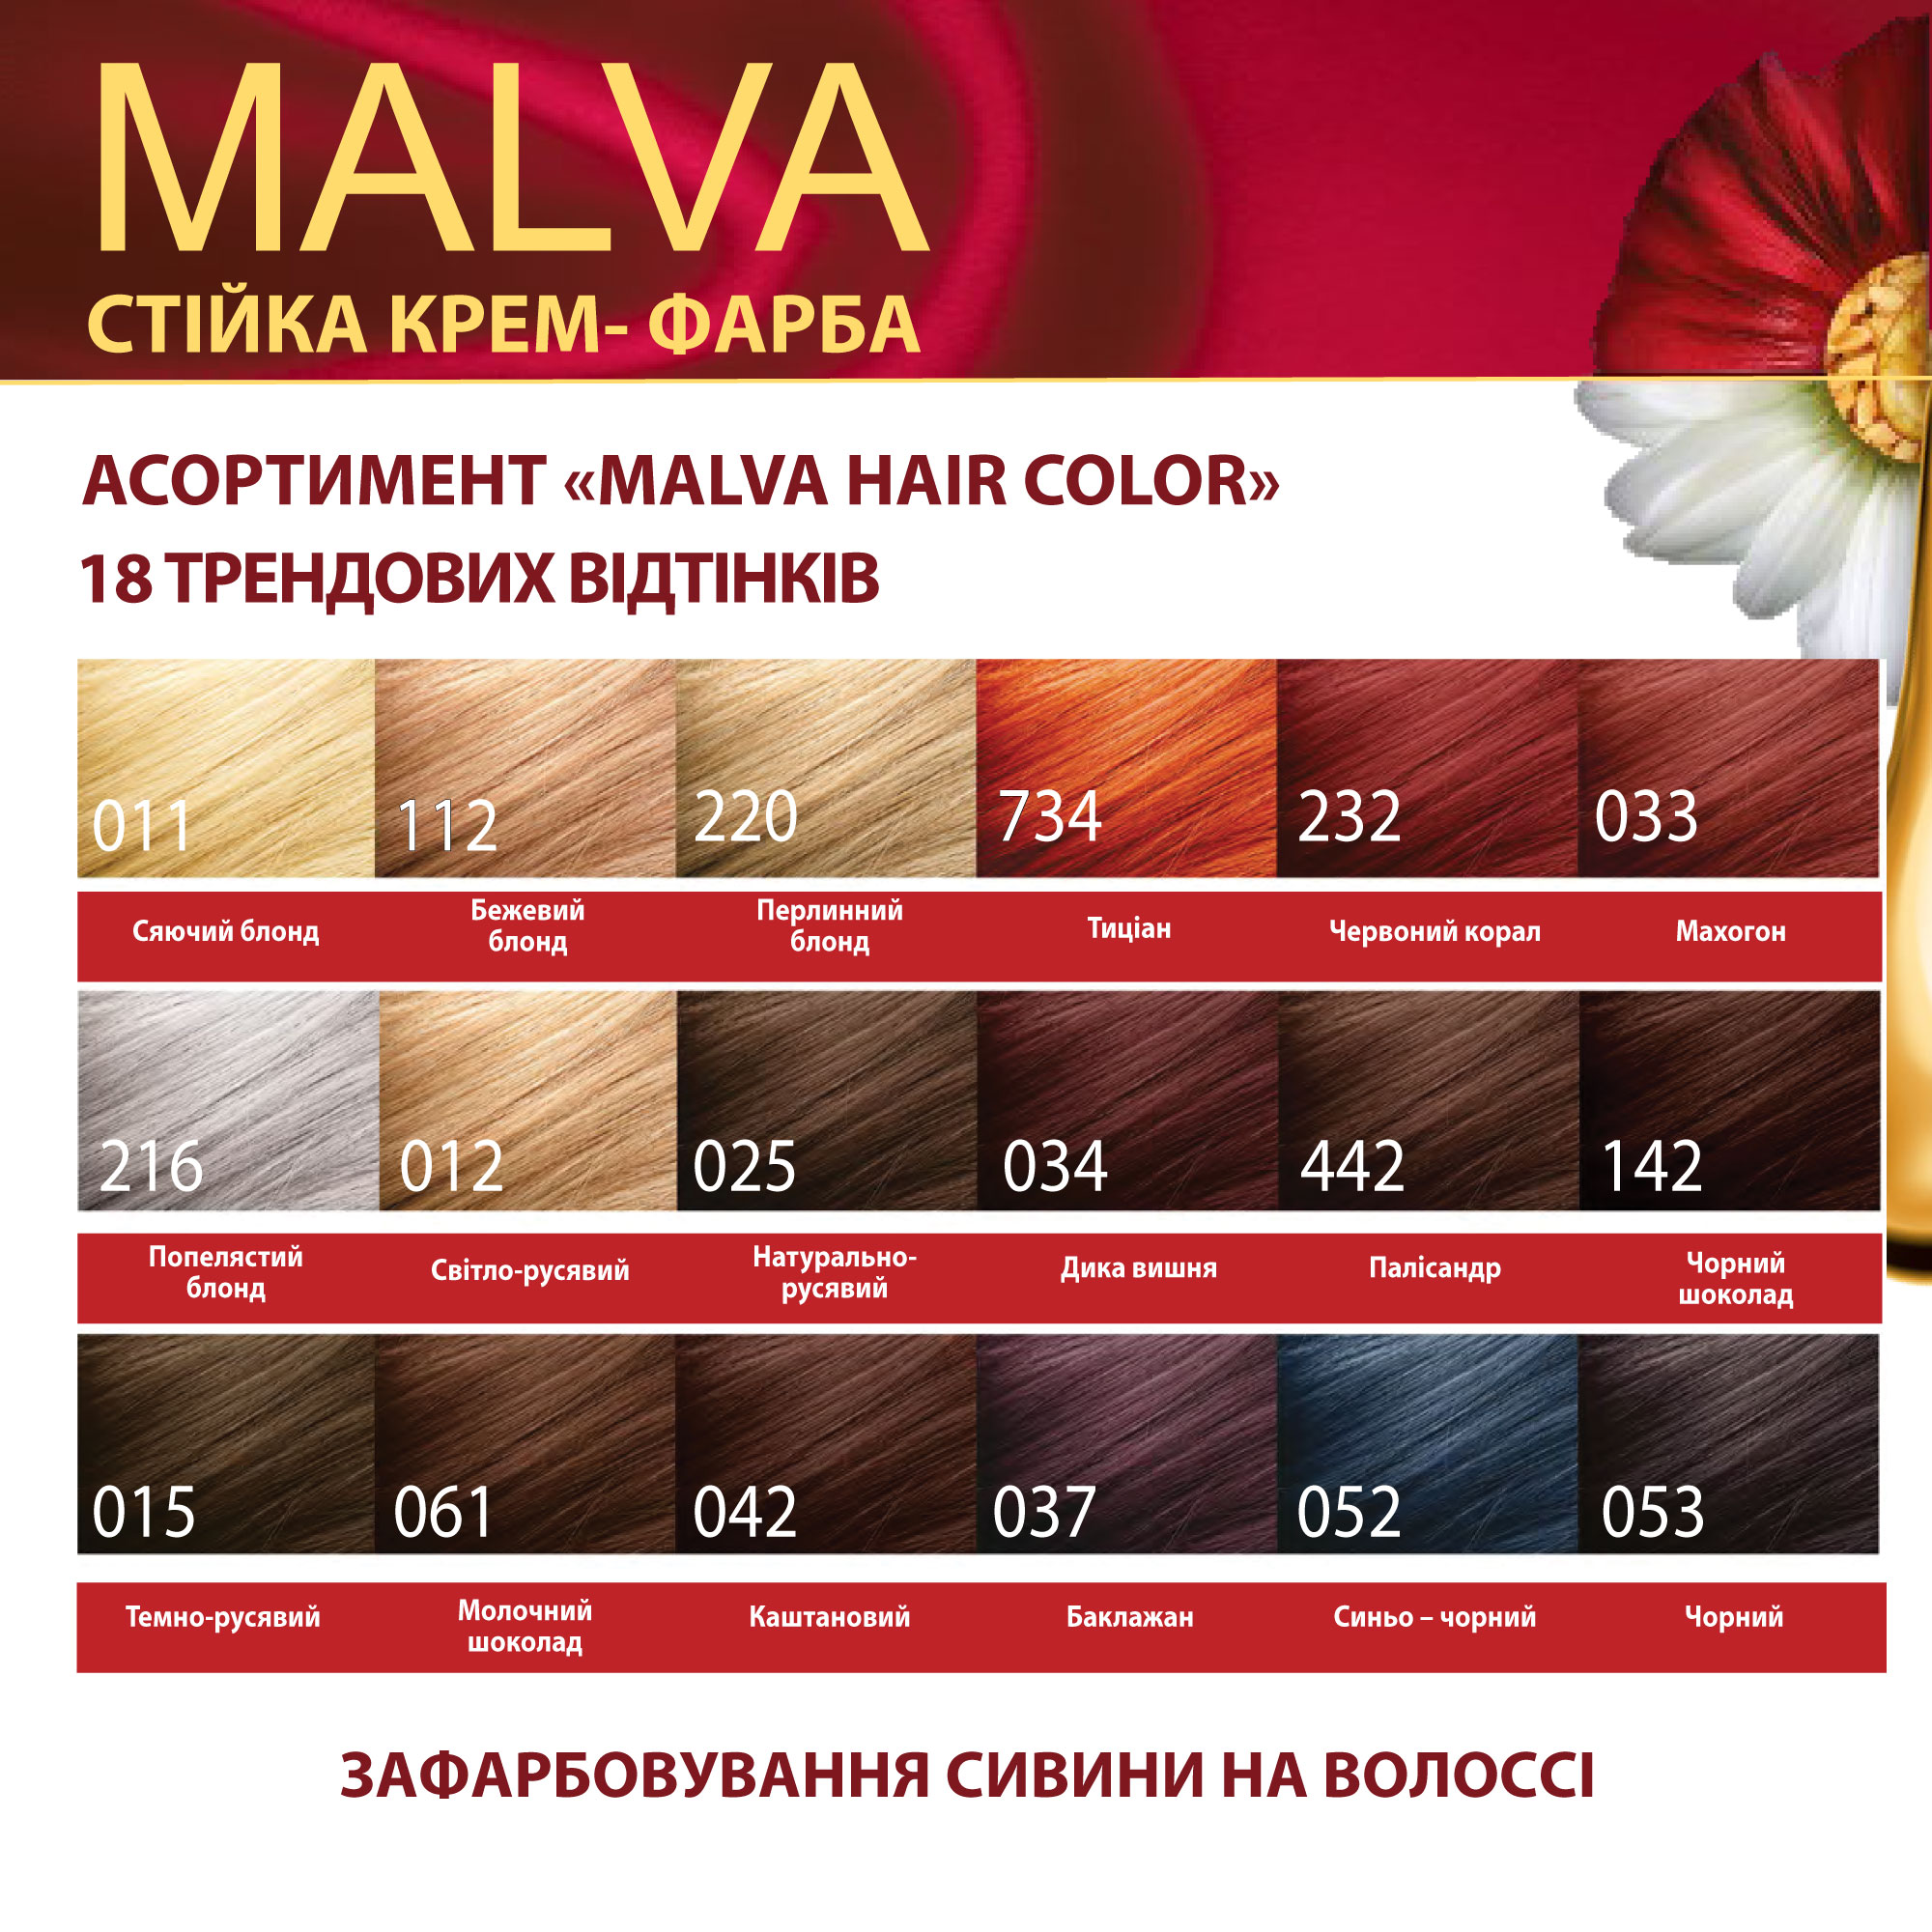 Крем-фарба для волосся Acme Color Malva, відтінок 052 (Синьо-чорний), 95 мл - фото 6